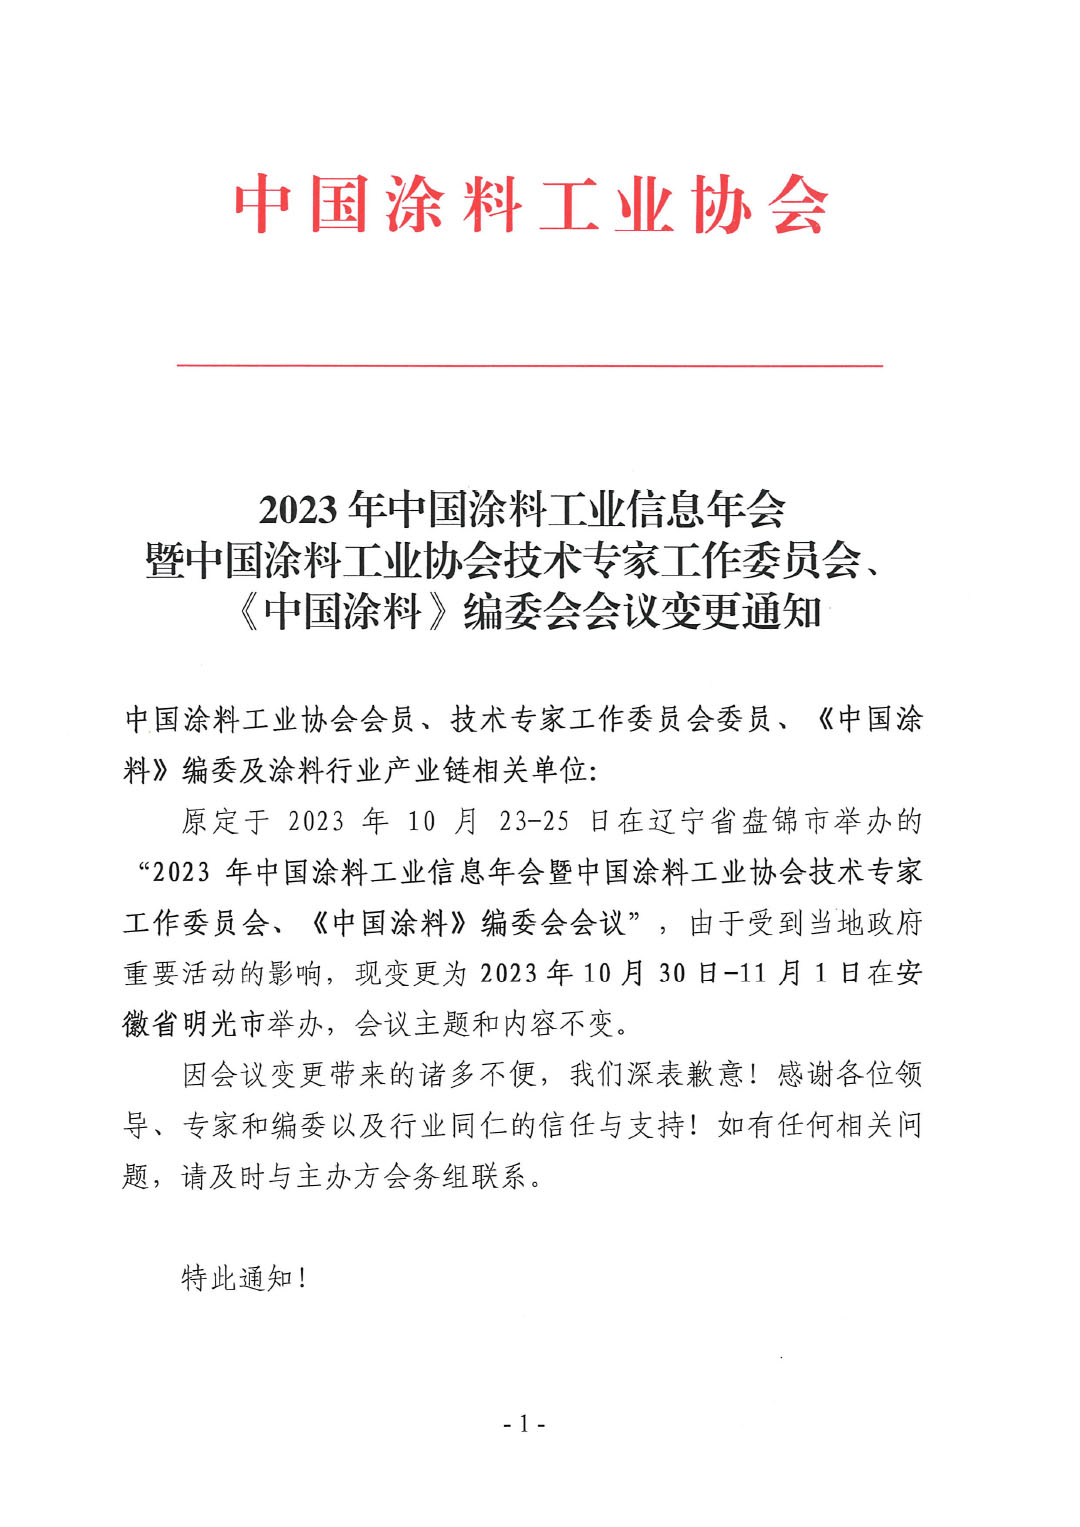 03 2023年中国涂料工业信息年会变更通知1017-1